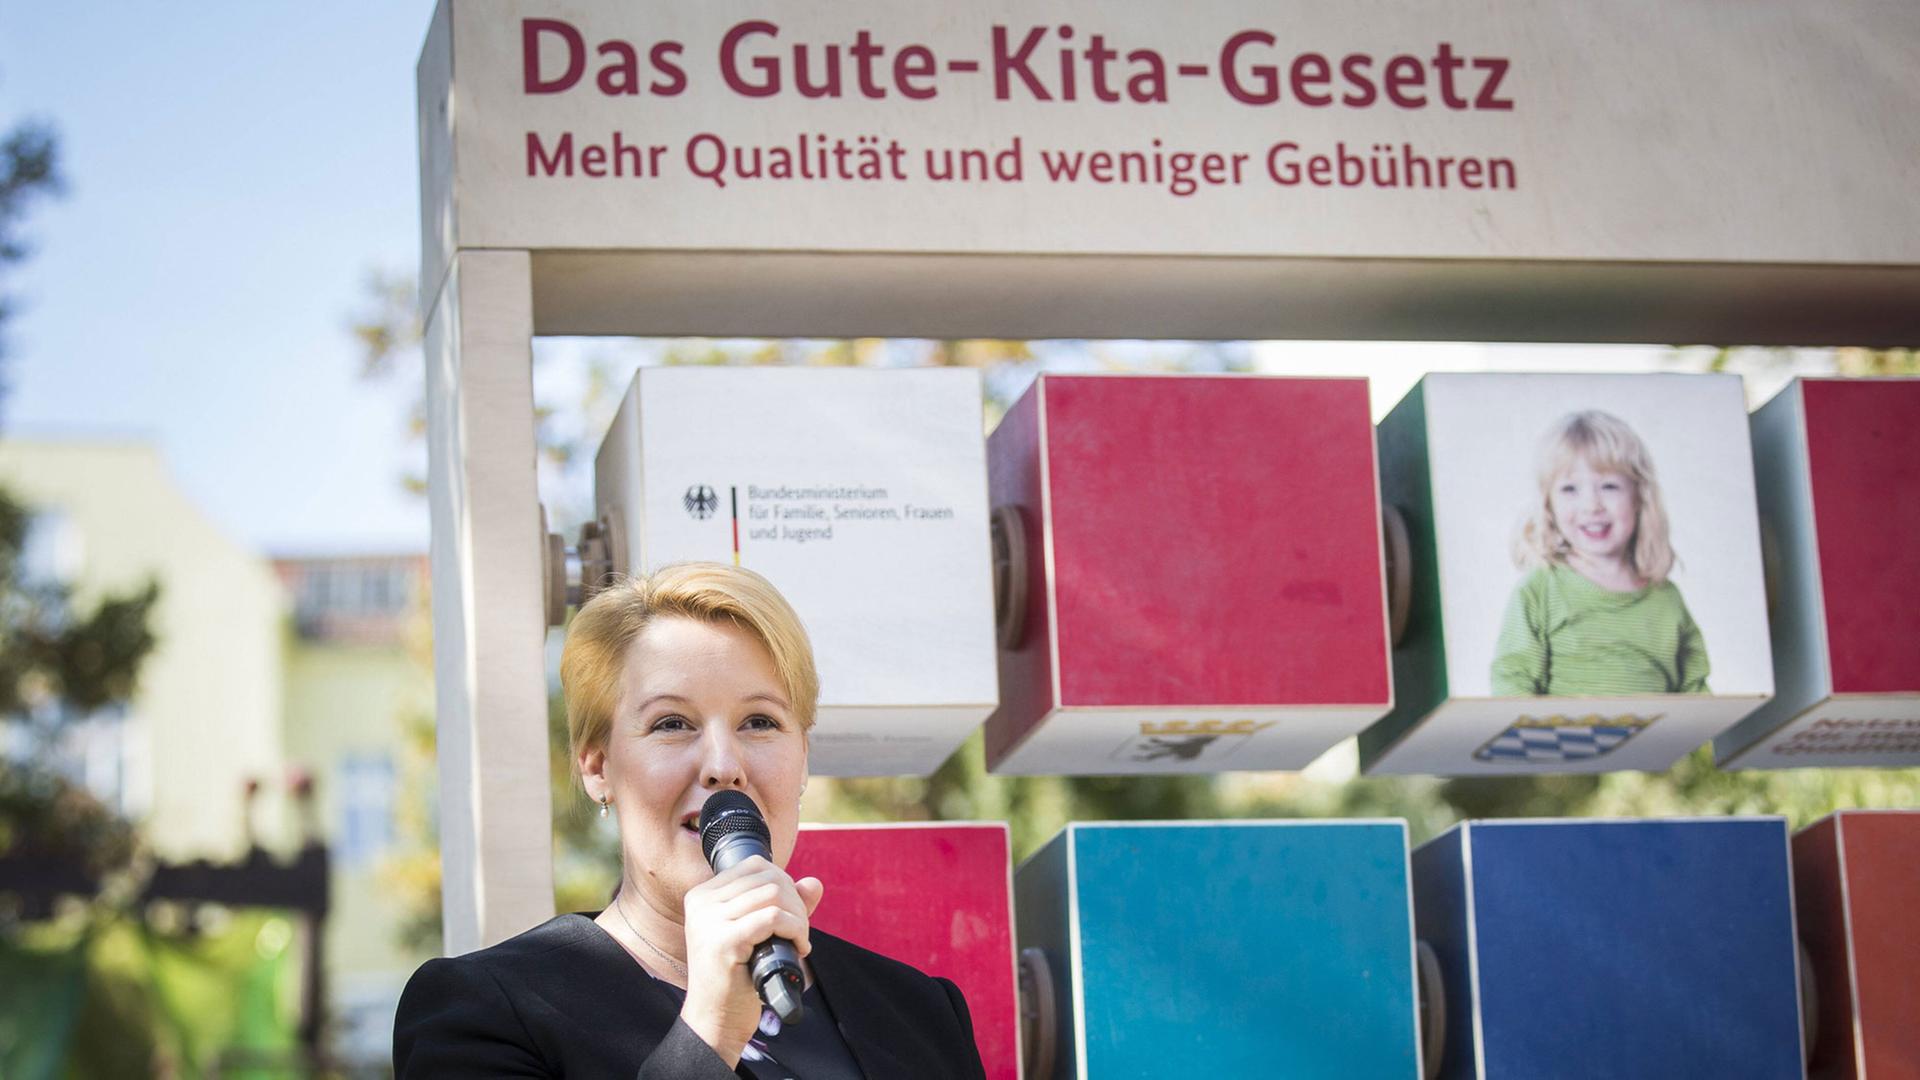 Bundesfamilienministerin Franziska Giffey stellt "Gute-Kita-Gesetzes" in Berlin vor.